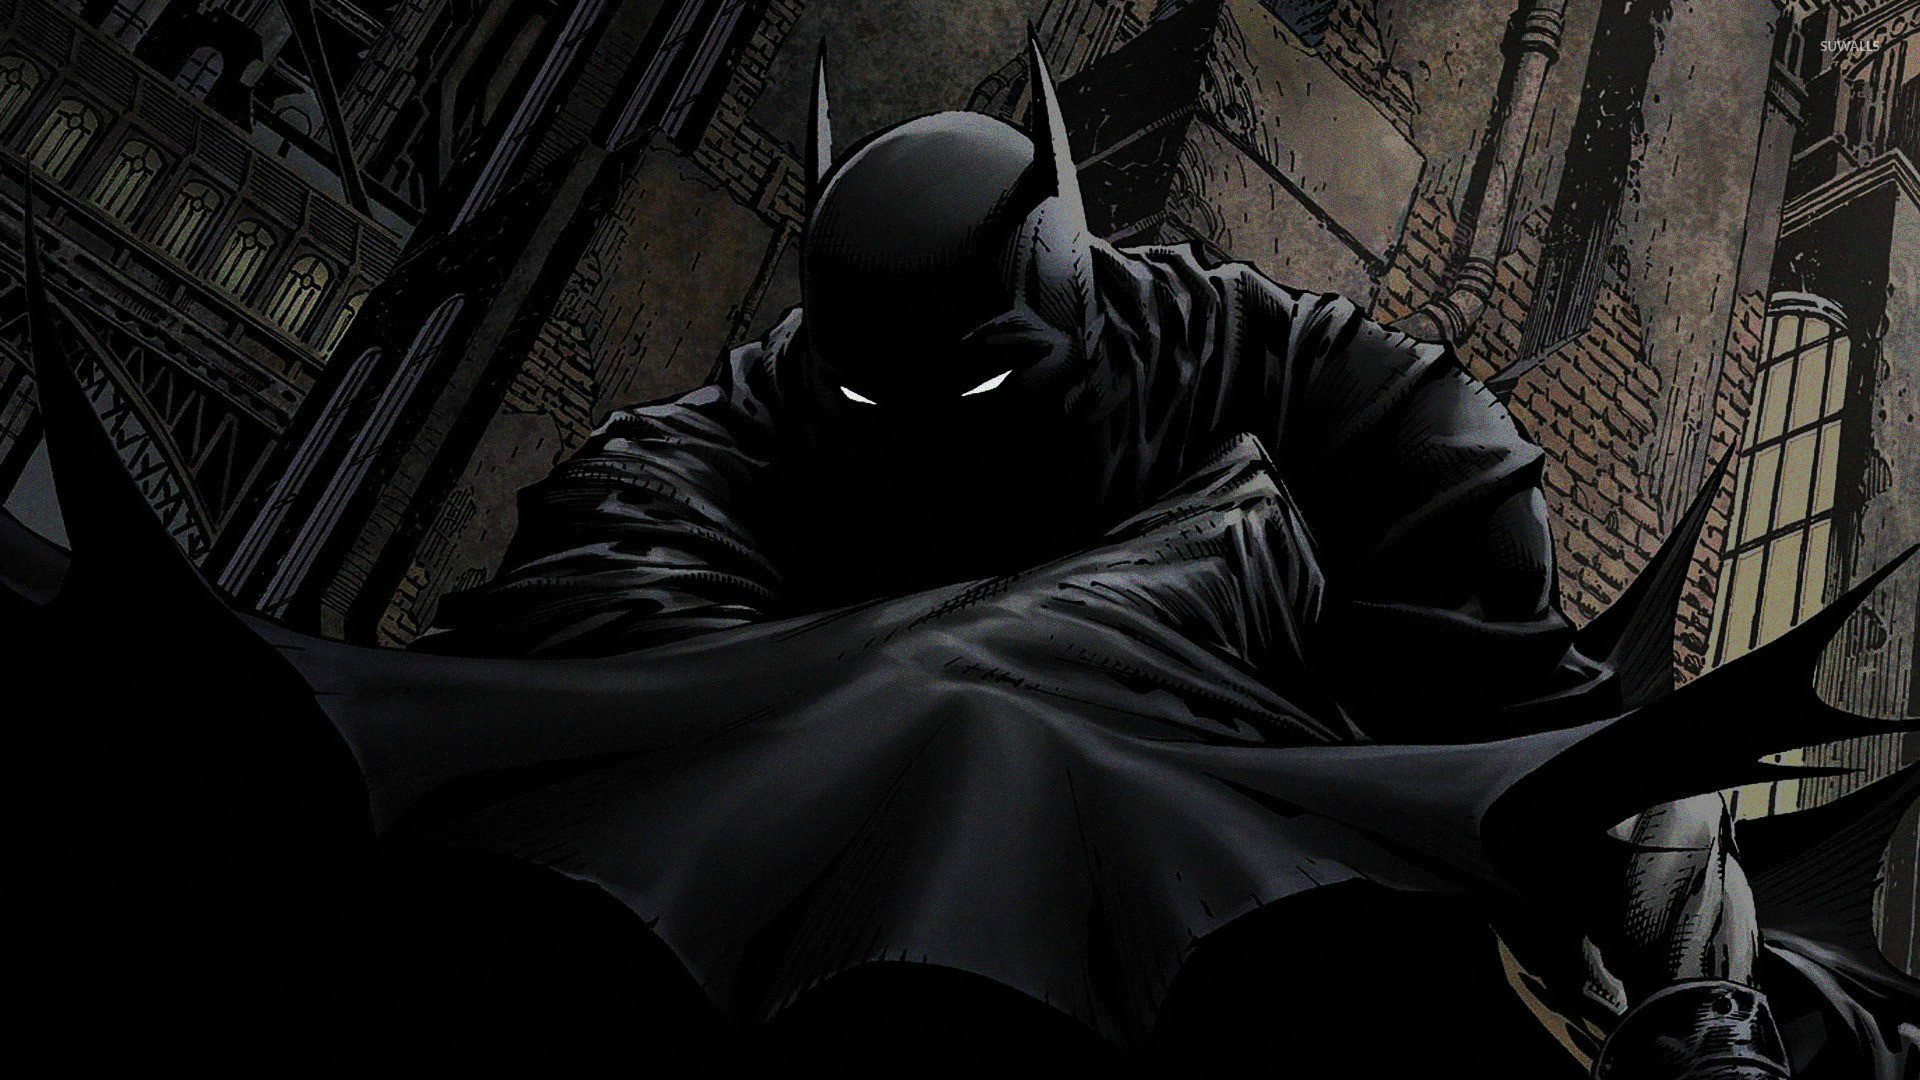 Hãy thưởng thức hình ảnh Batman sắc nét nhất với độ phân giải 4K để tận hưởng mọi chi tiết tuyệt vời của siêu anh hùng Gotham.